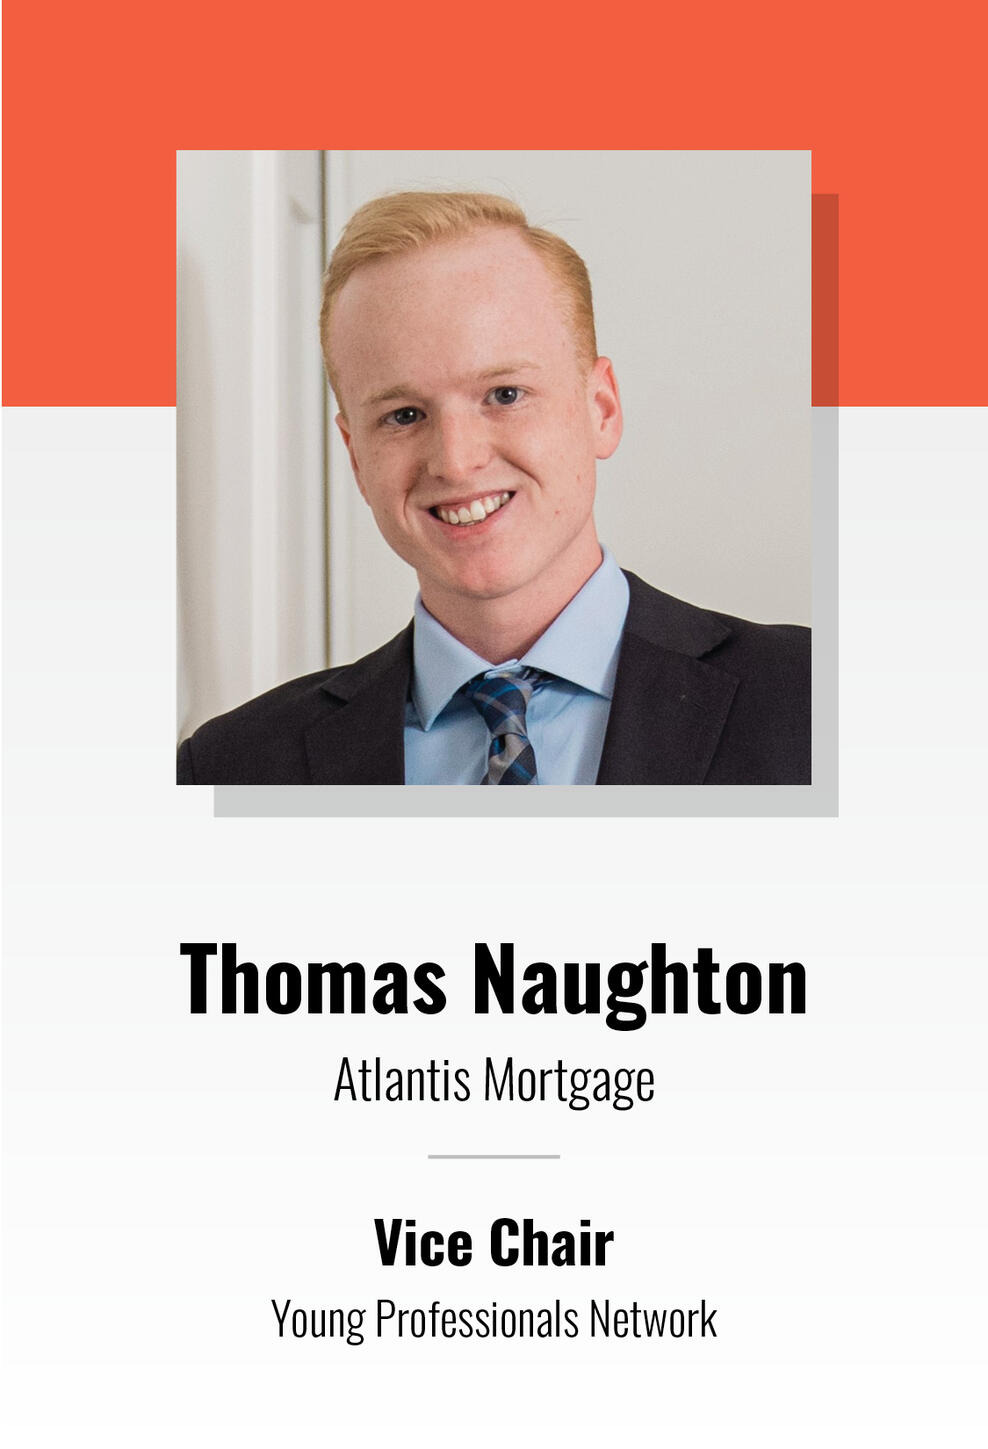 Thomas Naughton